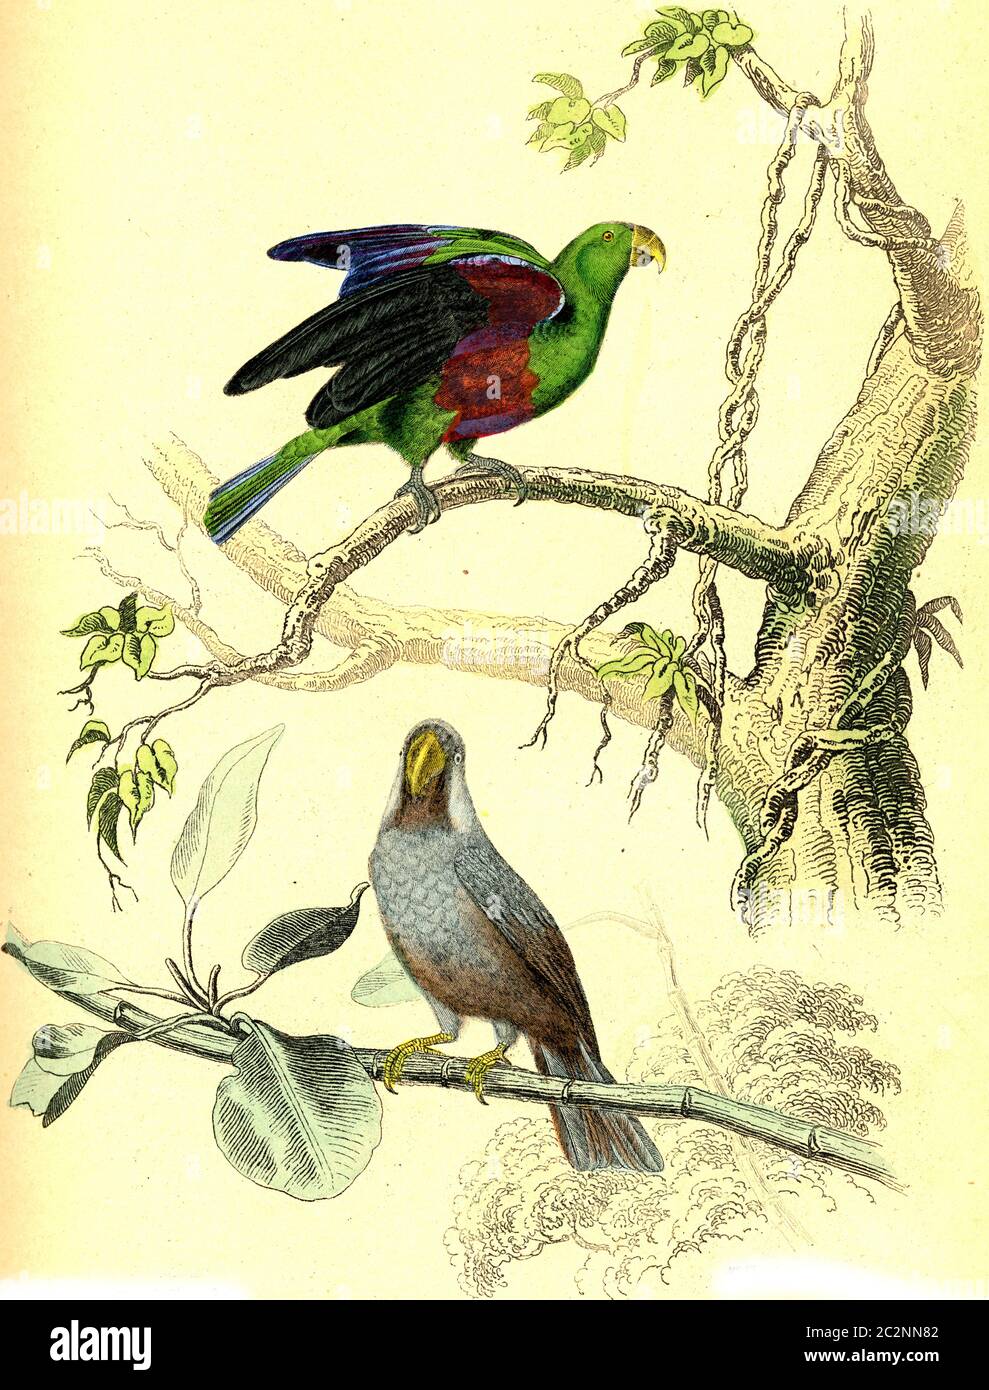 Le Parrot vert, le Mascarin, illustration gravée d'époque. De Buffon terminé. Banque D'Images